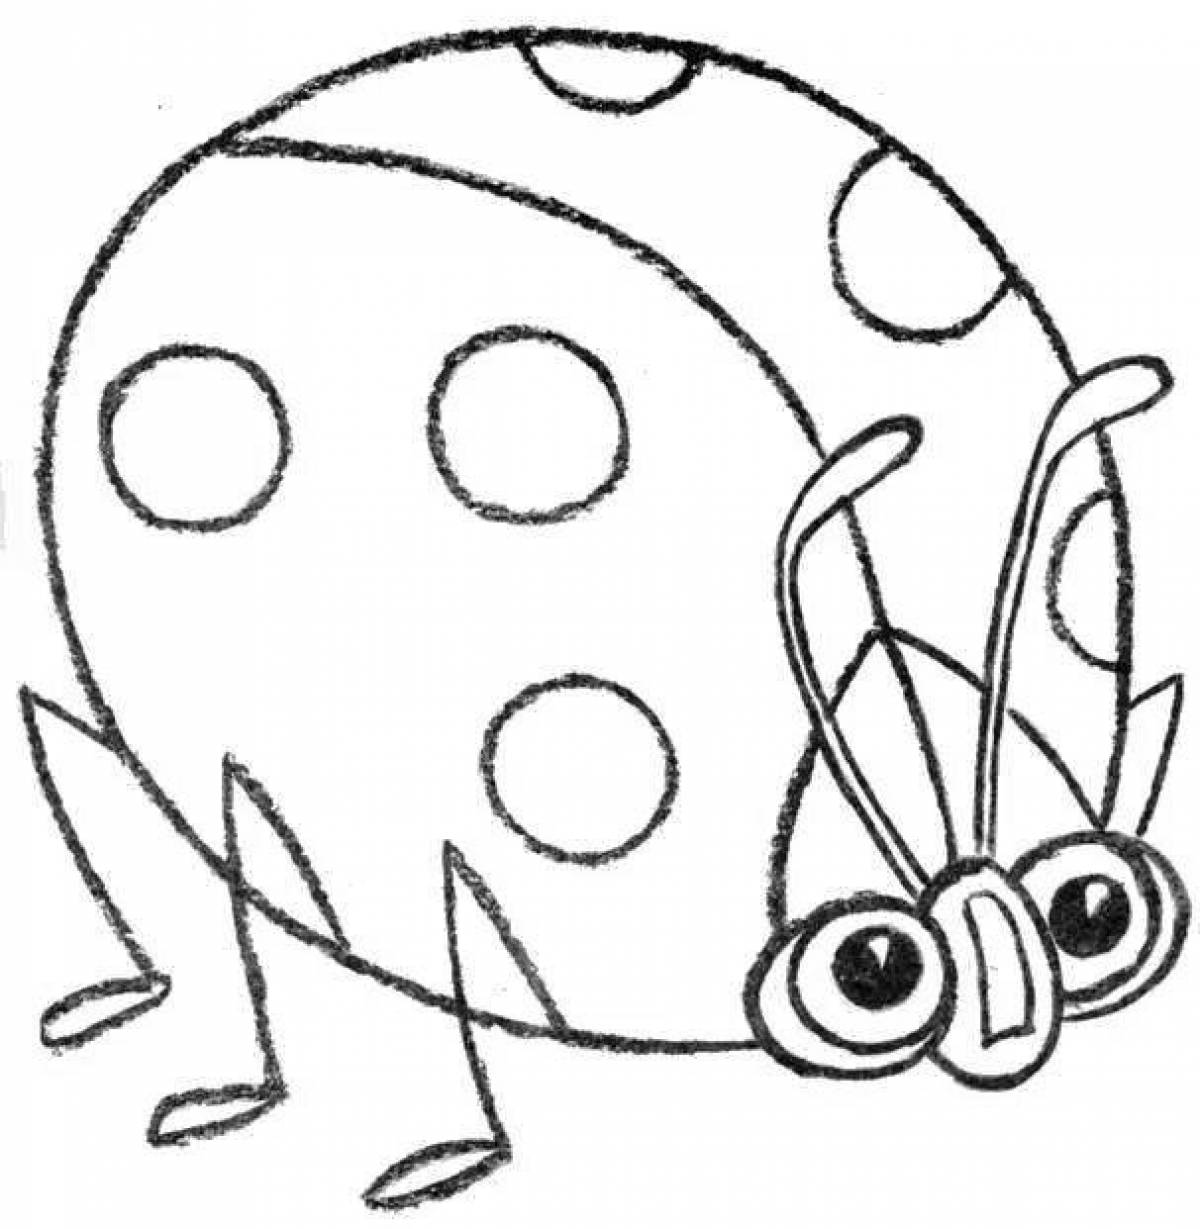 Joyful ladybug coloring for kids